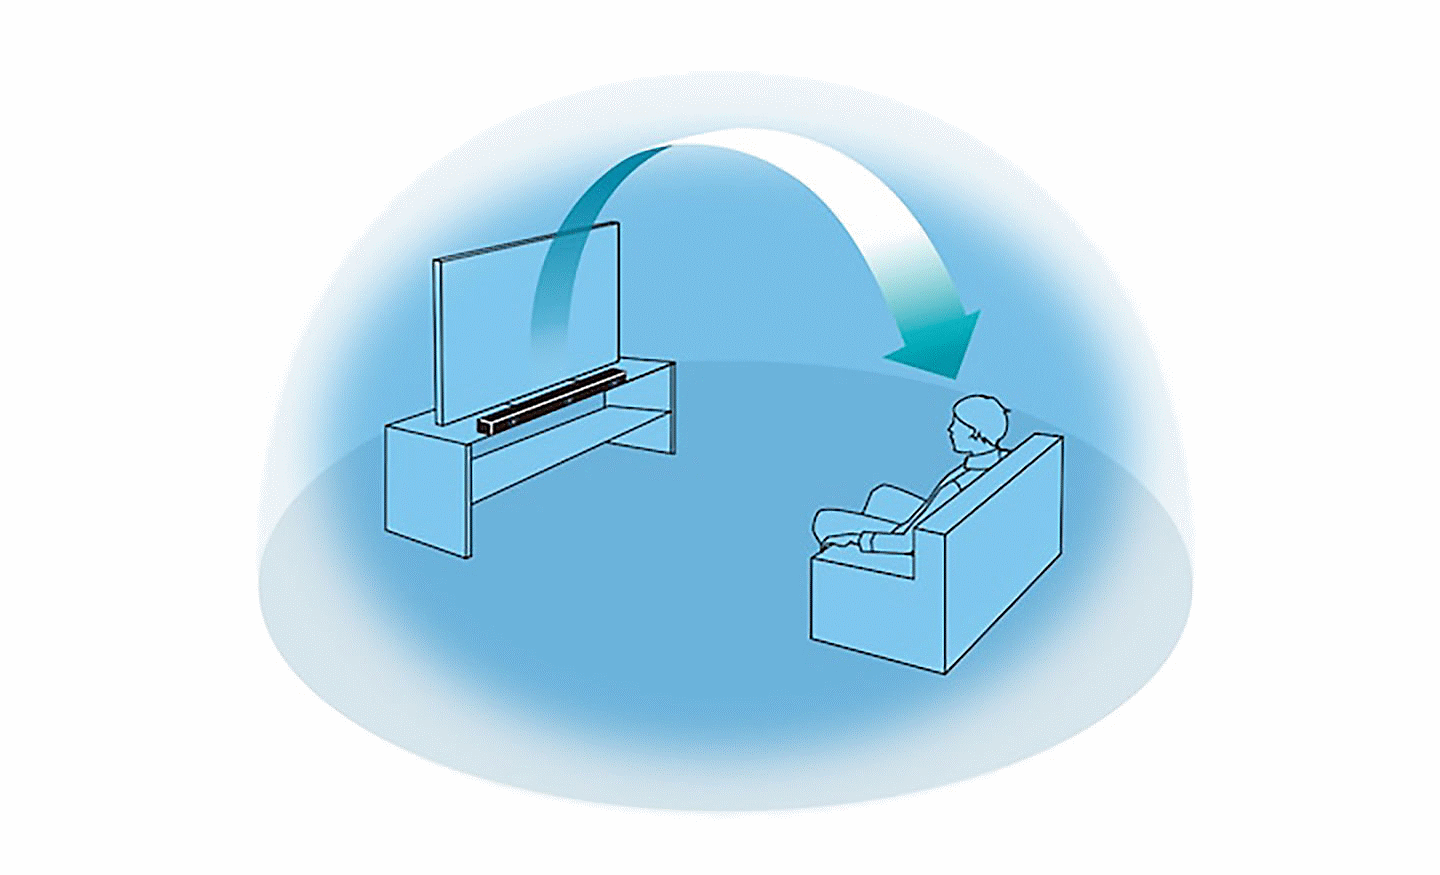 Slika plave kugle unutar koje sedi osoba ispred TV-a i soundbara, strelica se proteže od soundbara do osobe